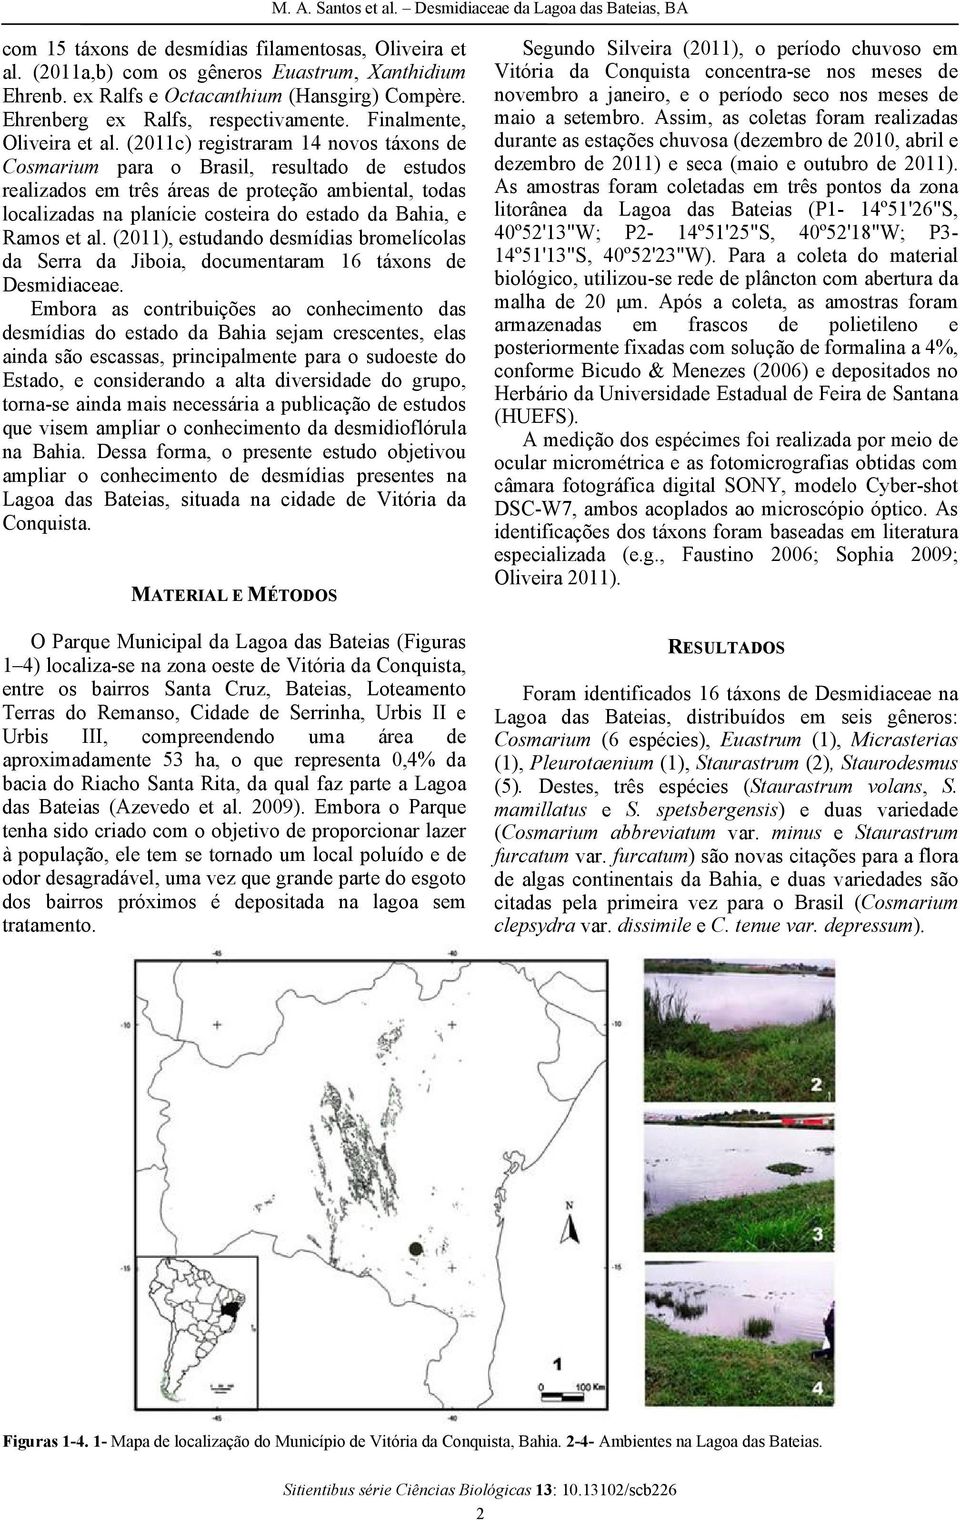 (2011c) registraram 14 novos táxons de Cosmarium para o Brasil, resultado de estudos realizados em três áreas de proteçãoo ambiental, todas localizadas na planície costeira do estado da Bahia, e